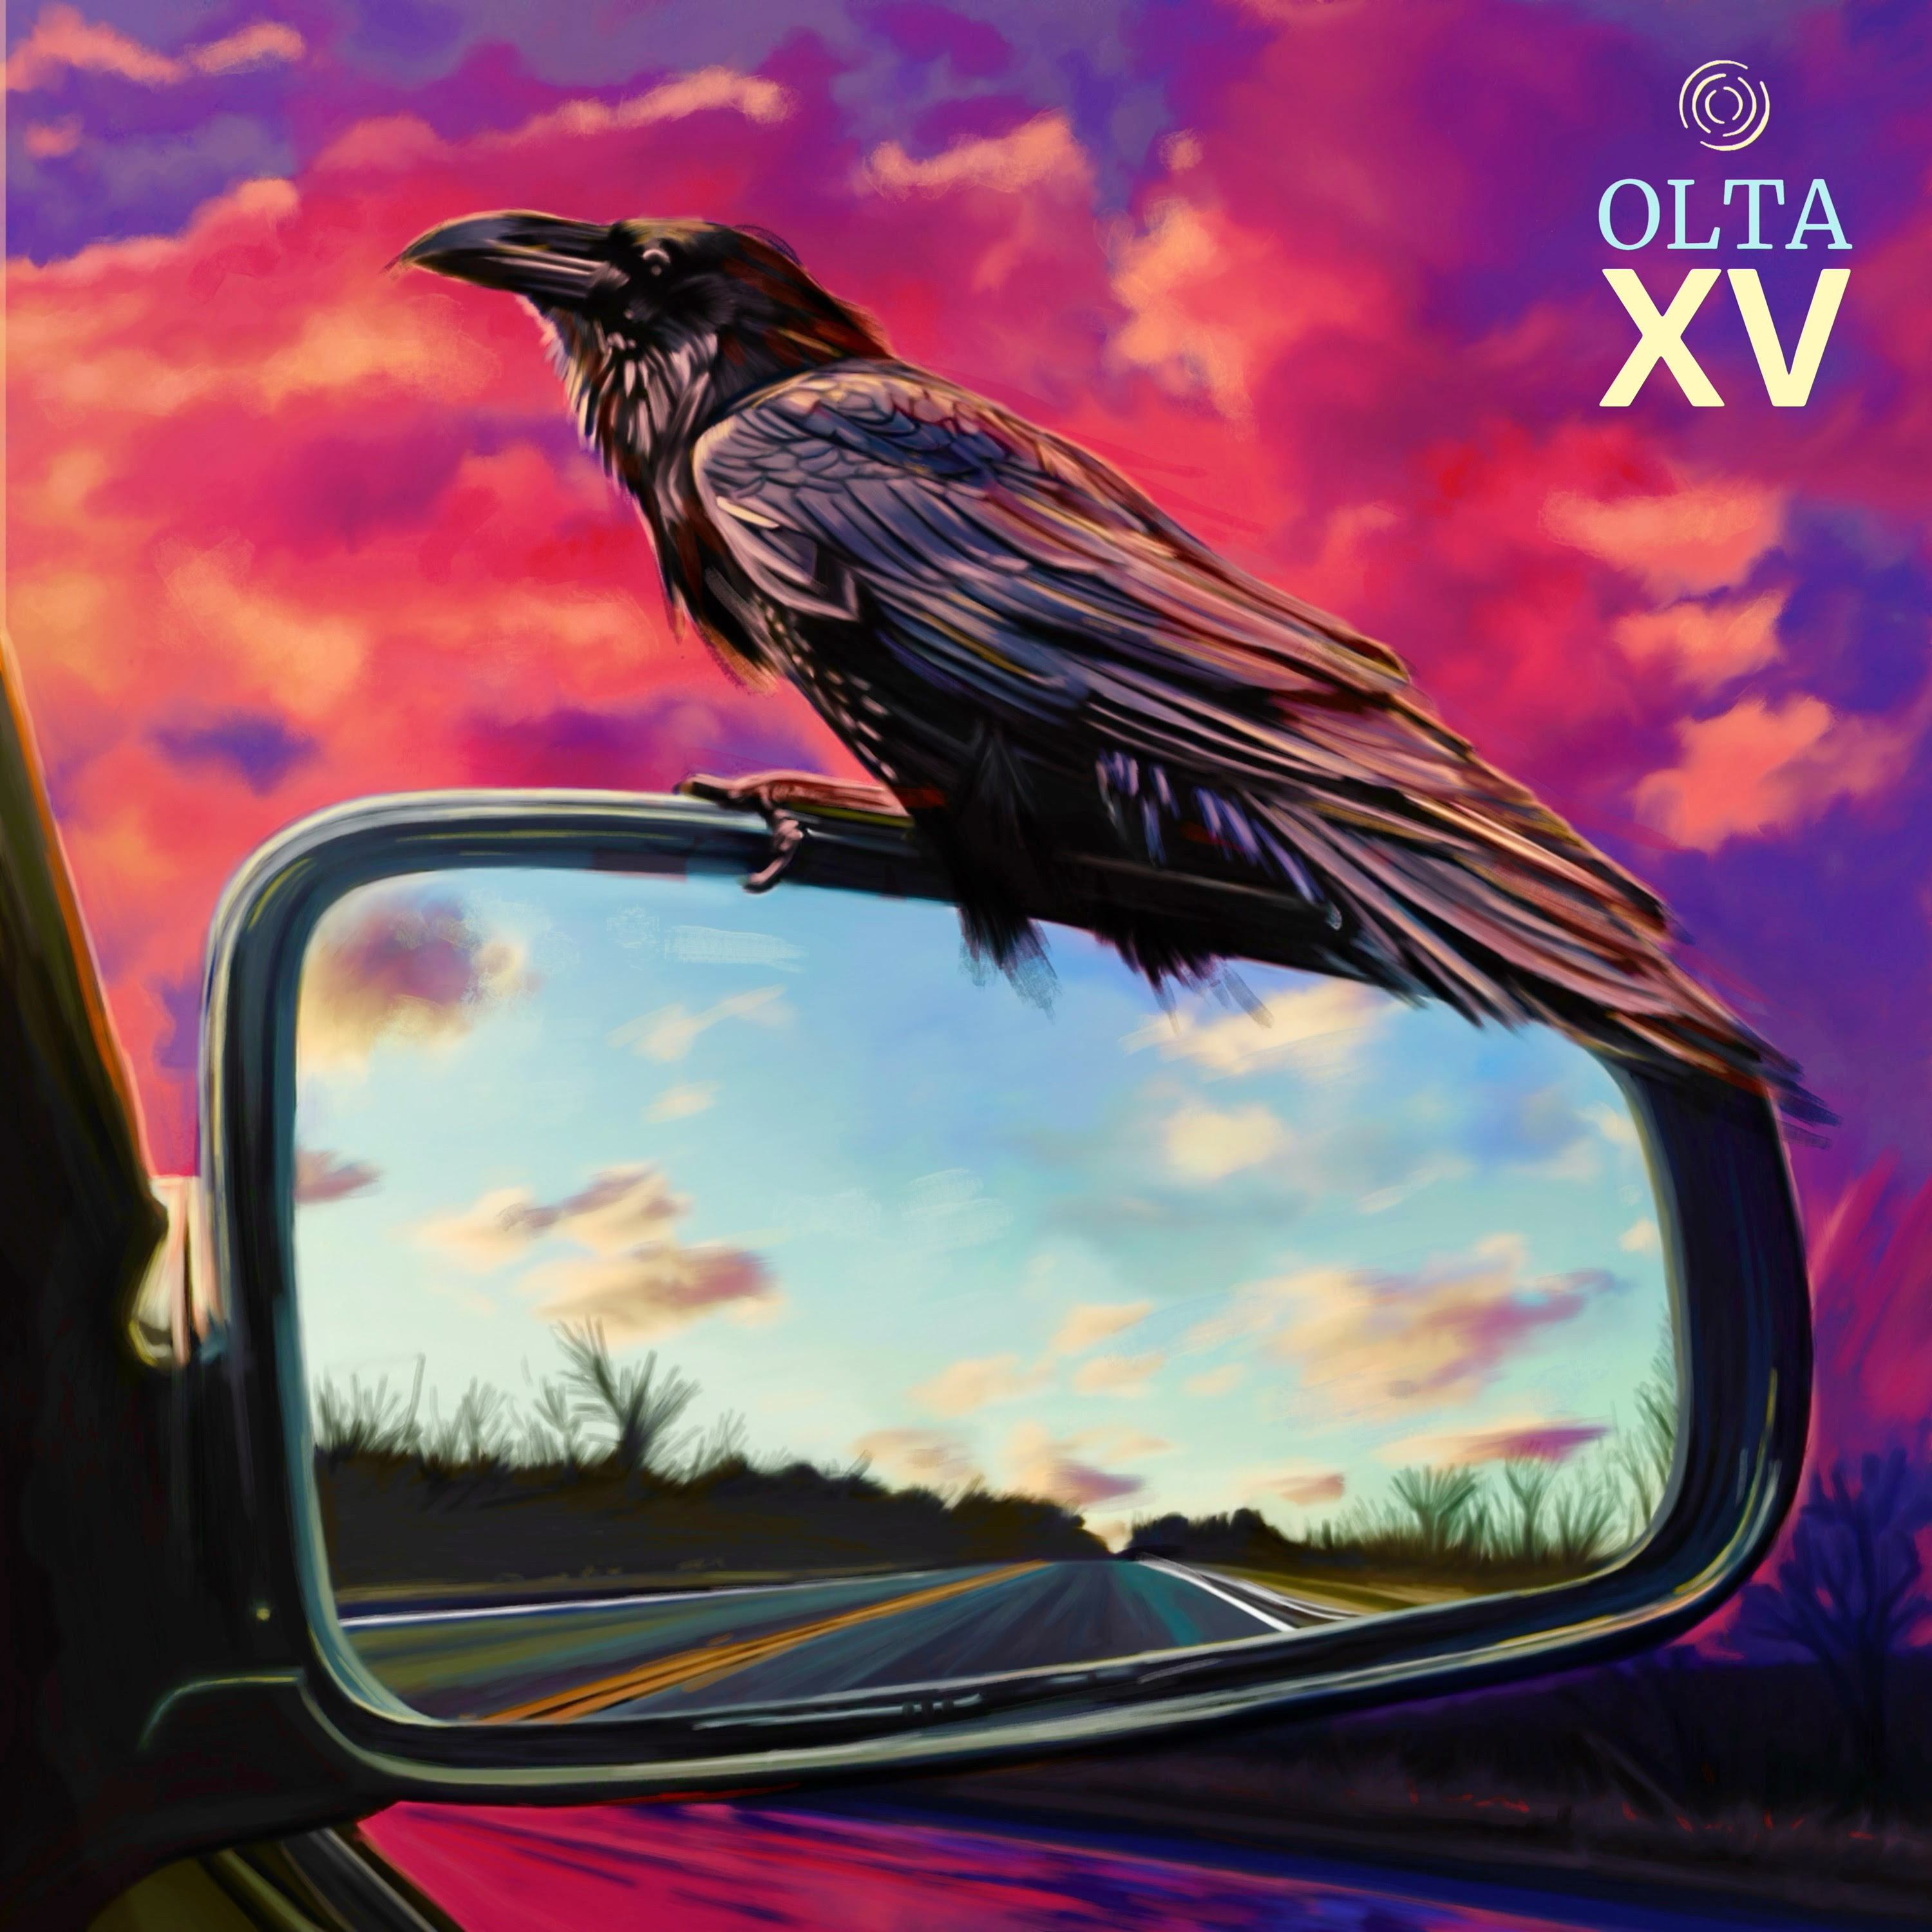 Olta'dan. 4. yılında yeni albüm